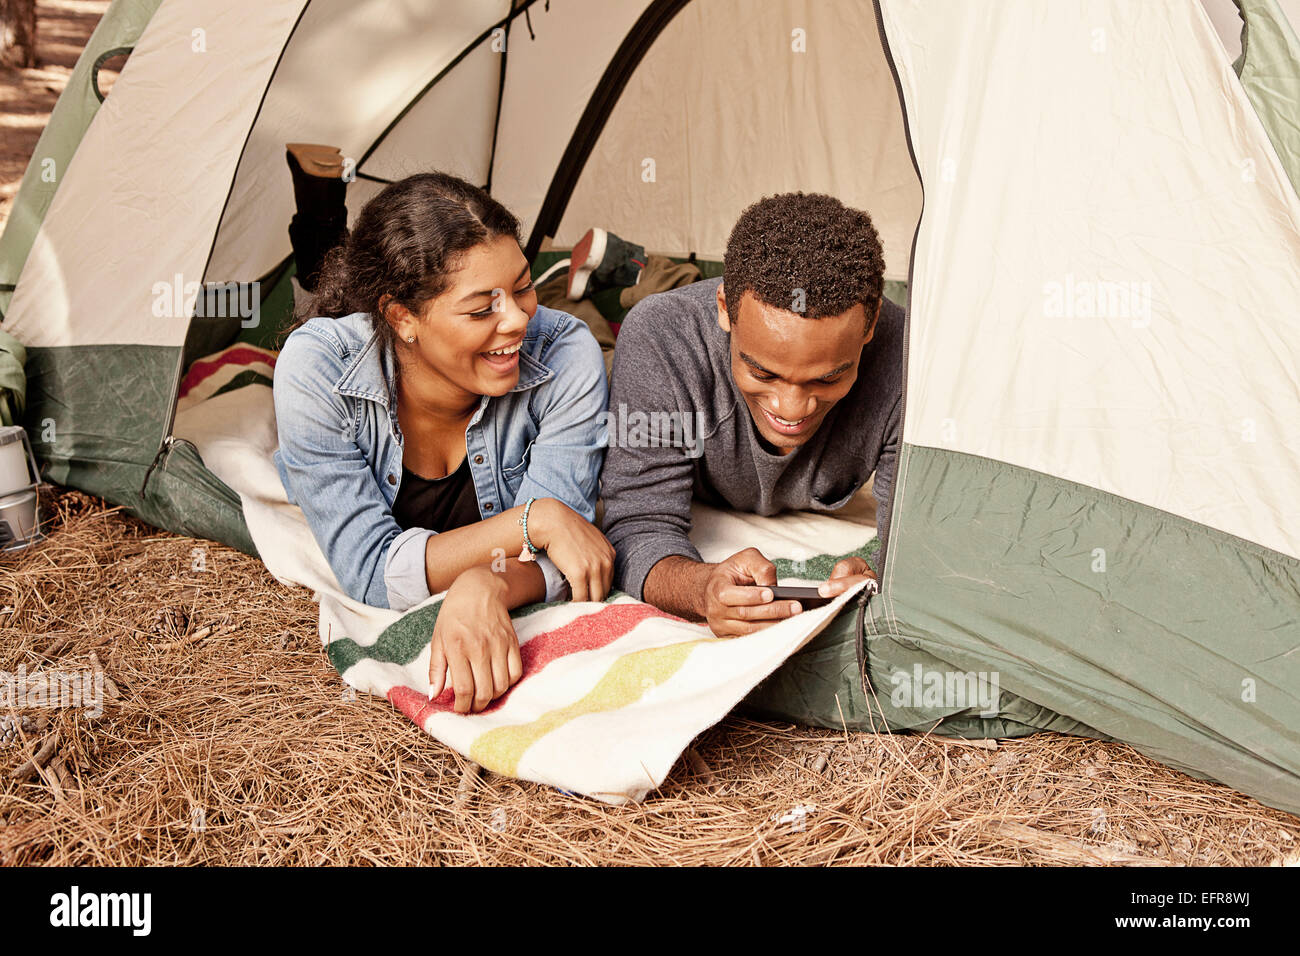 Coppia giovane giacente in tenda ingresso la lettura di testi sullo smartphone Foto Stock